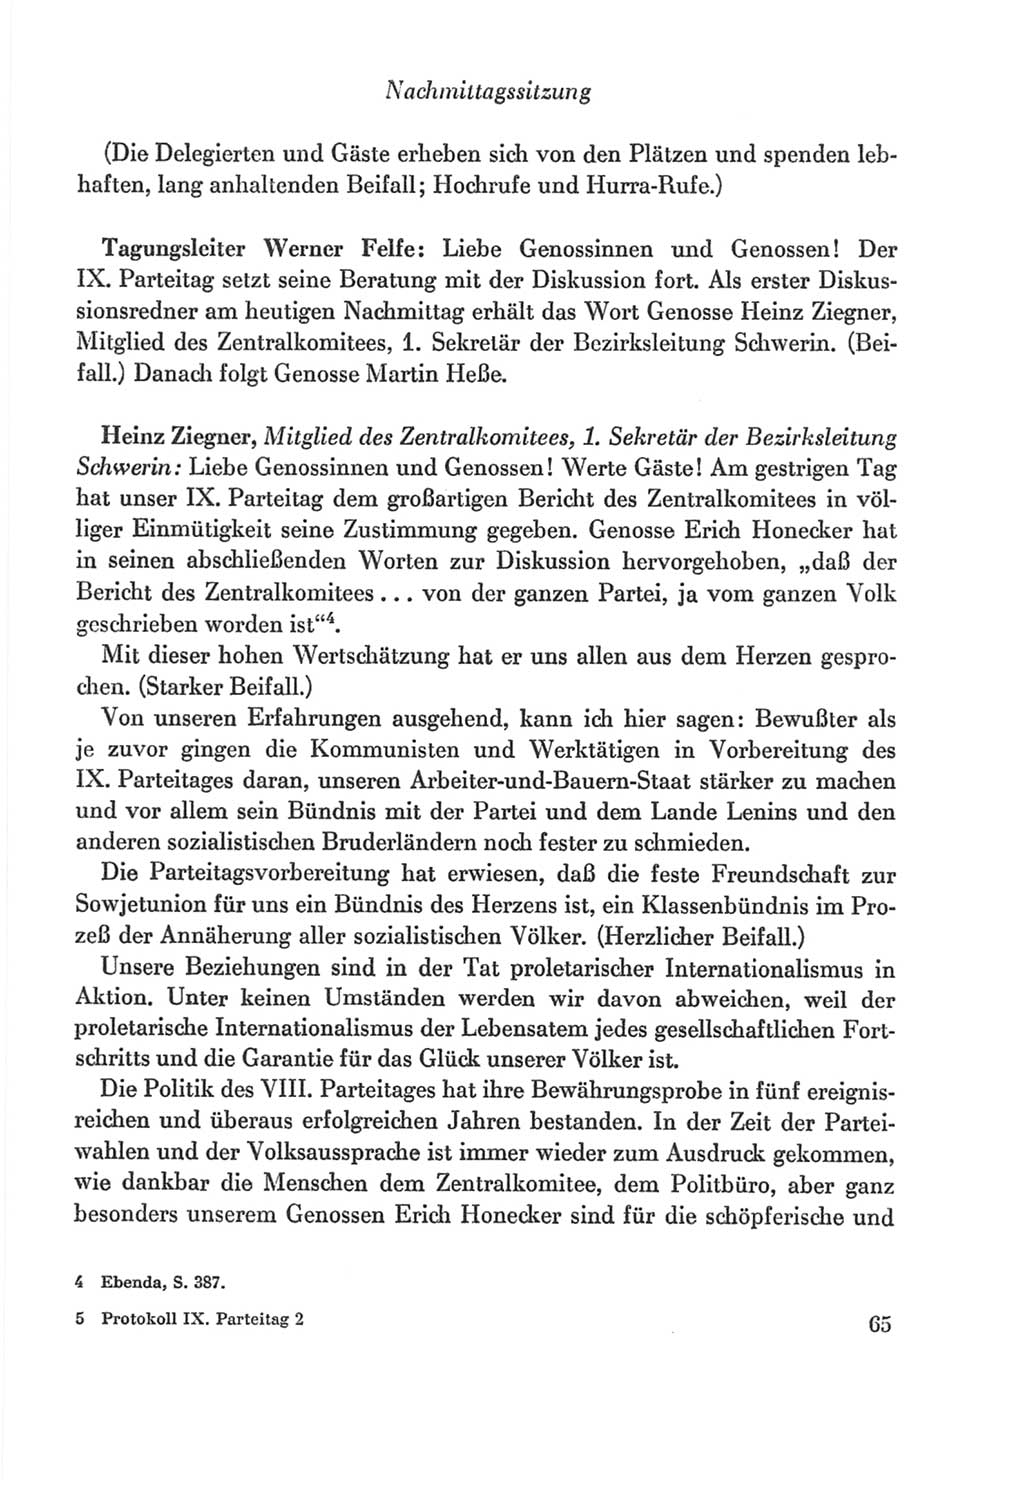 Protokoll der Verhandlungen des Ⅸ. Parteitages der Sozialistischen Einheitspartei Deutschlands (SED) [Deutsche Demokratische Republik (DDR)] 1976, Band 2, Seite 65 (Prot. Verh. Ⅸ. PT SED DDR 1976, Bd. 2, S. 65)